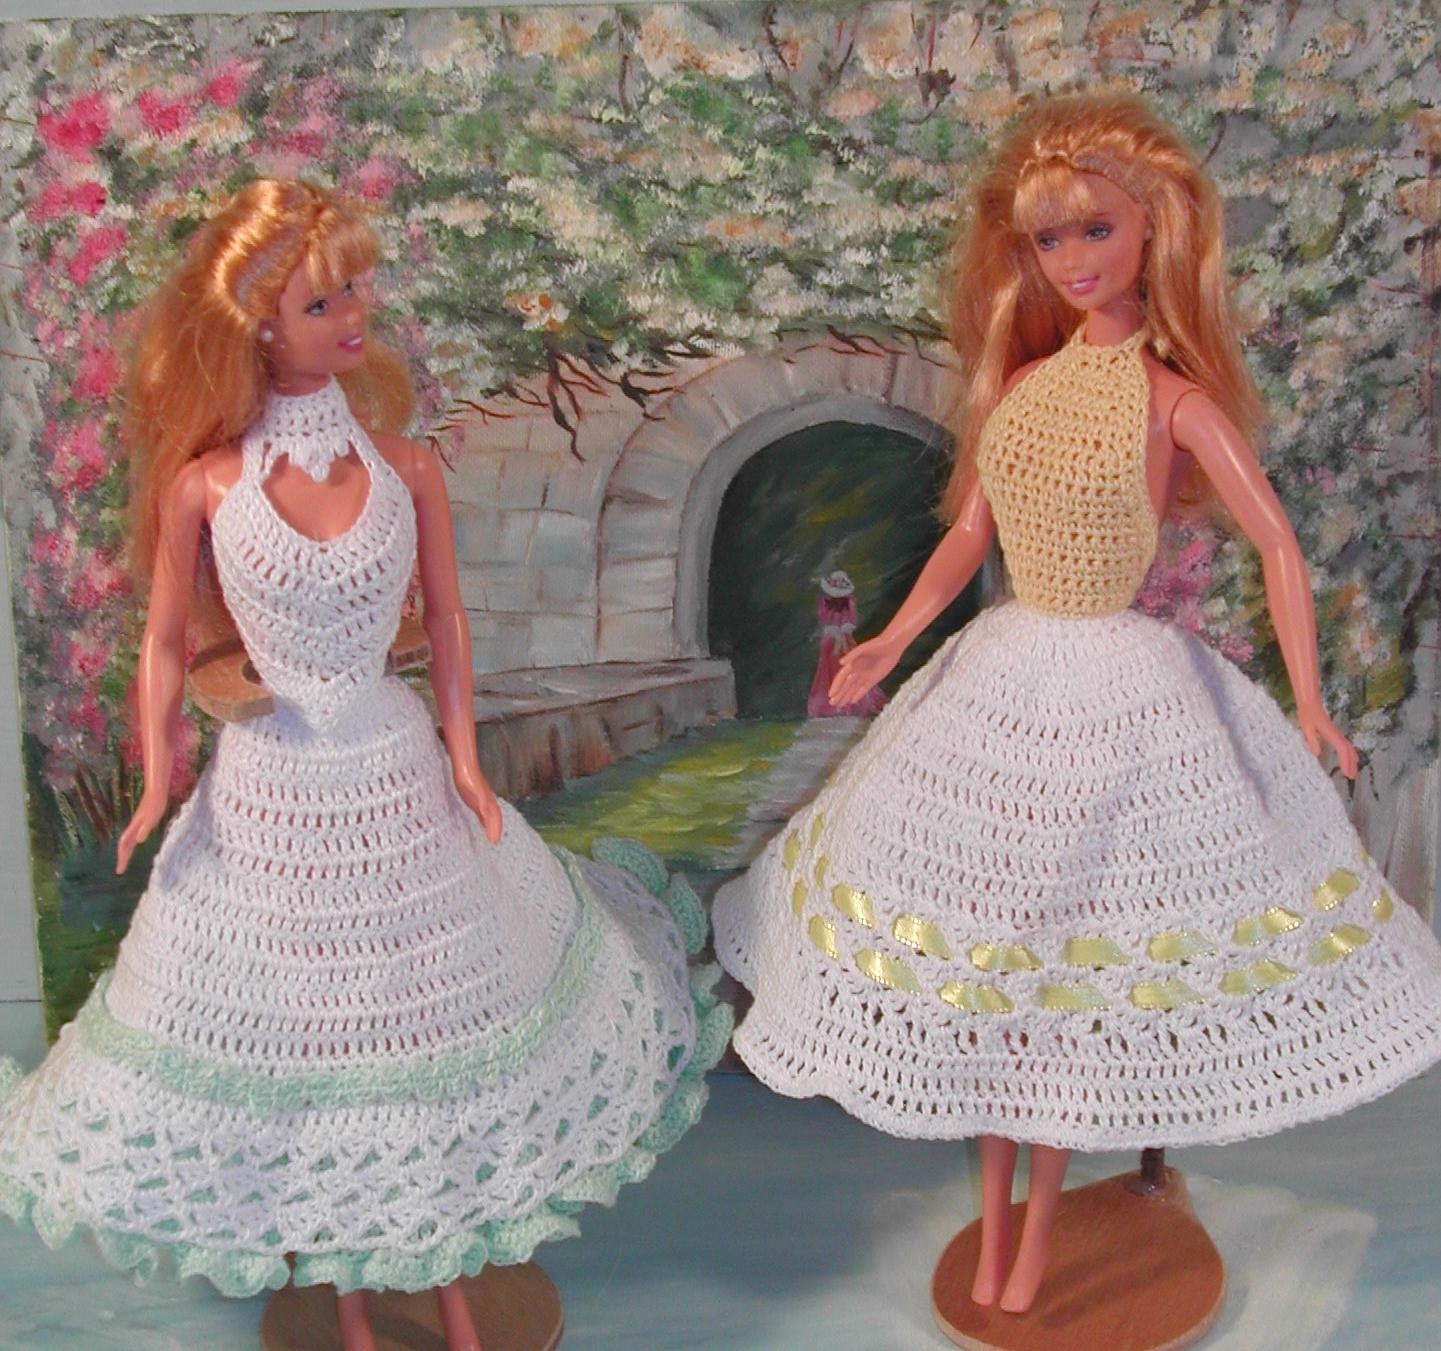 Señal Ten cuidado Perspectiva Barbie crochet patrones trajes de coleccionista de ganchillo - Etsy España